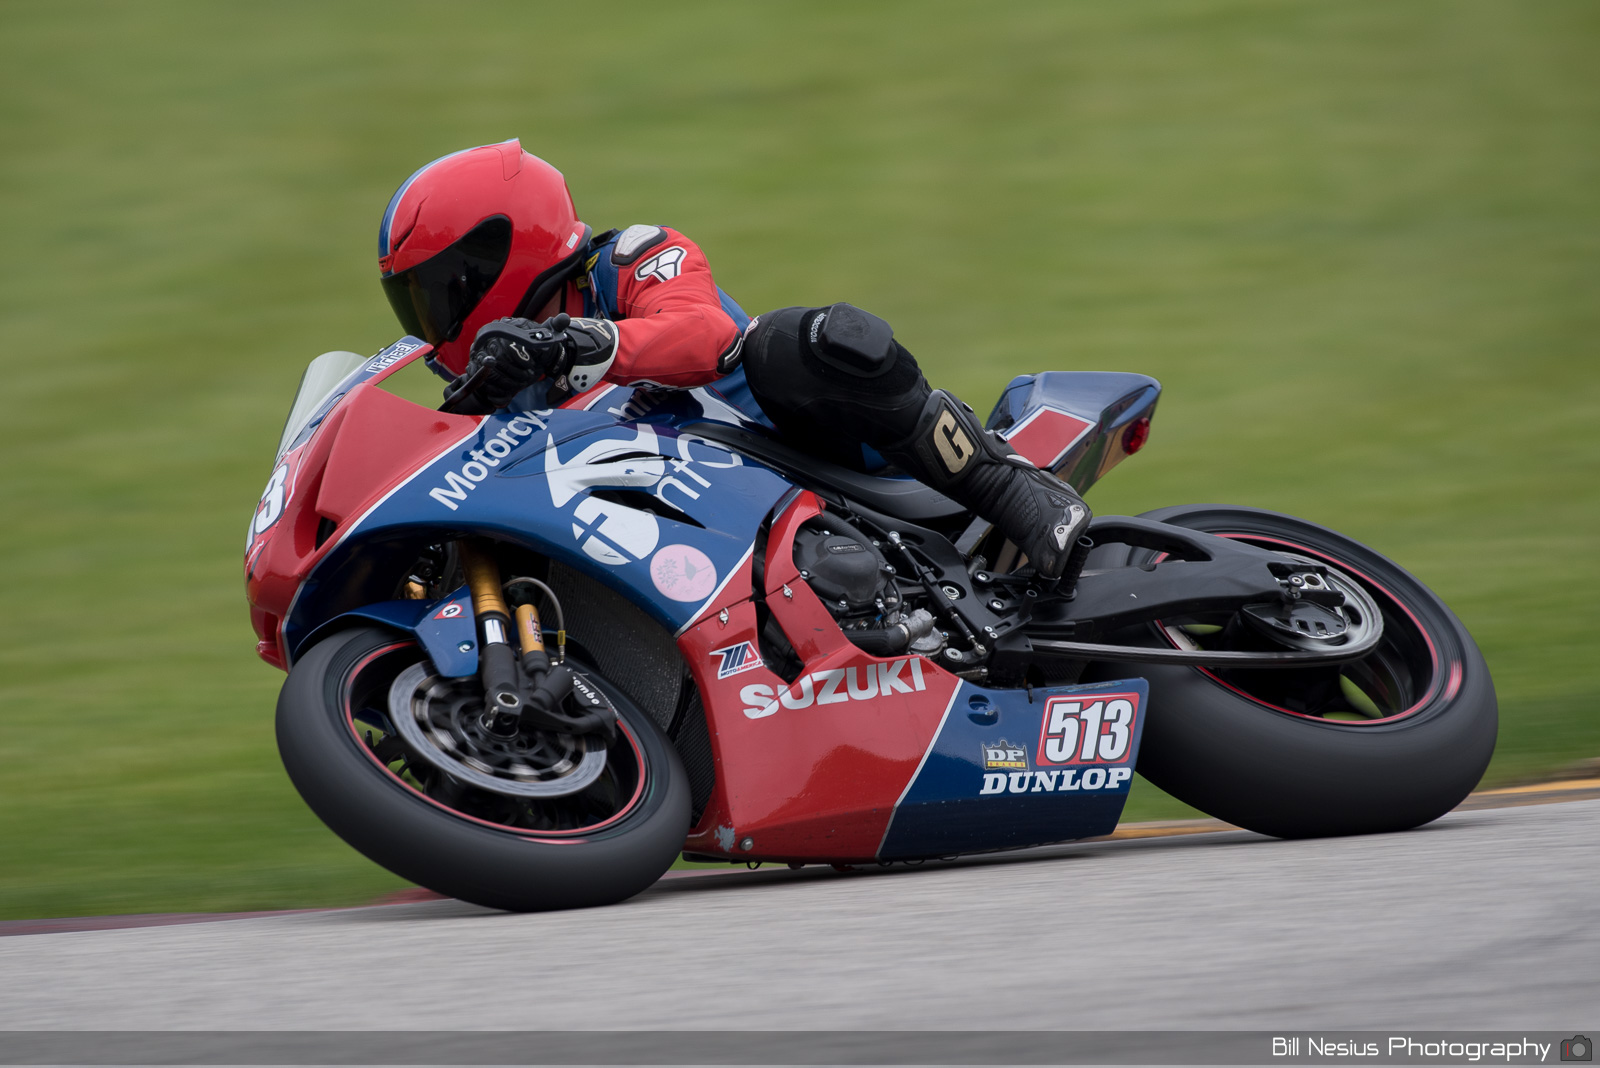 Michael Jensen on the Number 513 MFC Racing Suzuki GSX-R / DSC_1288 / 4